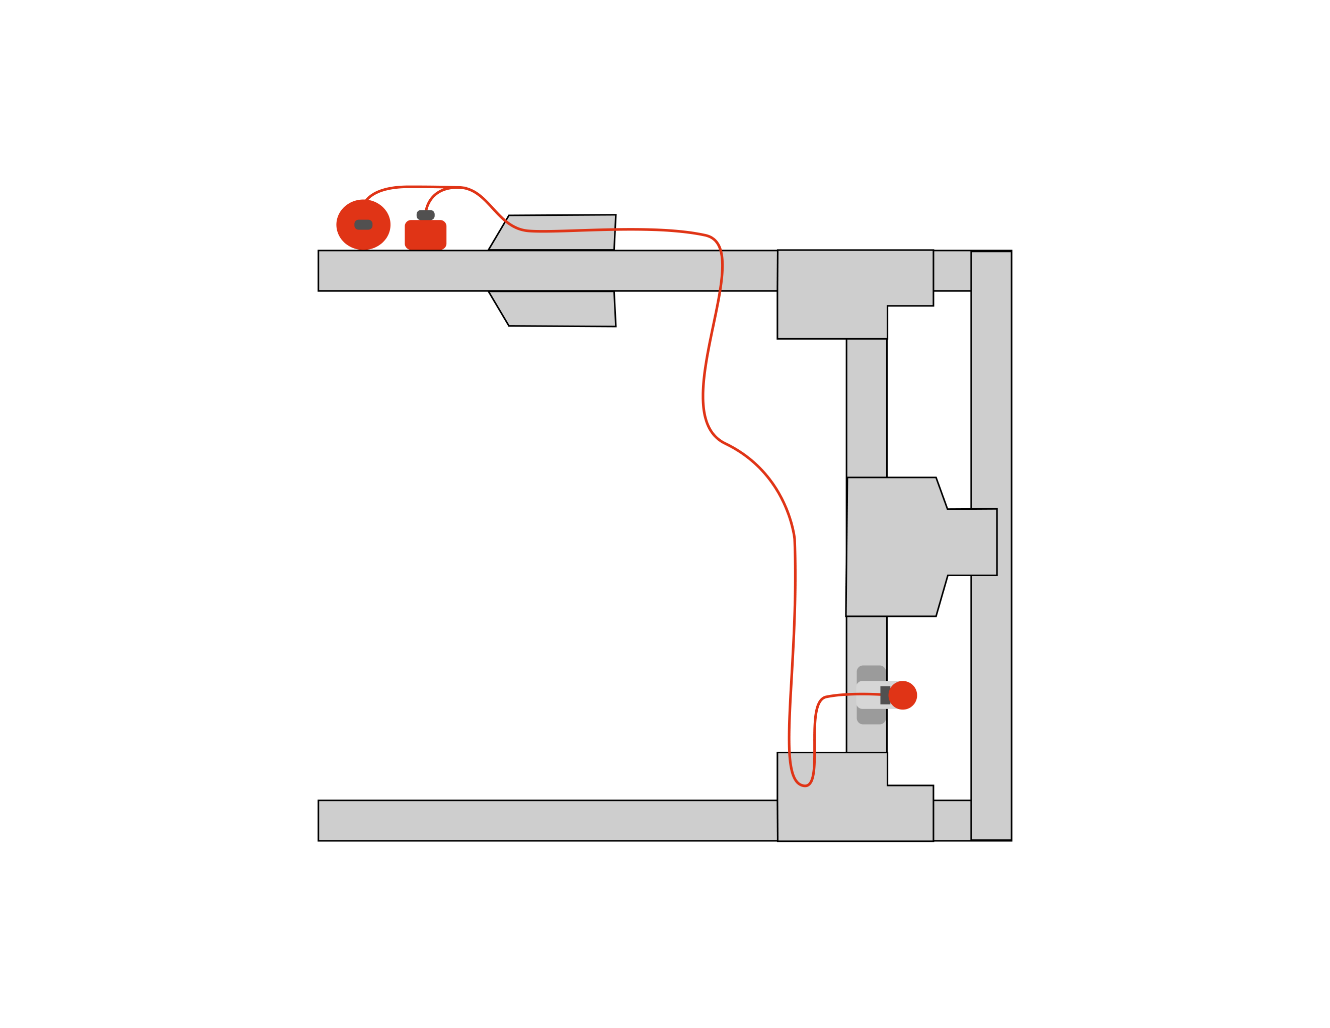 BrakeSync wiring schematic